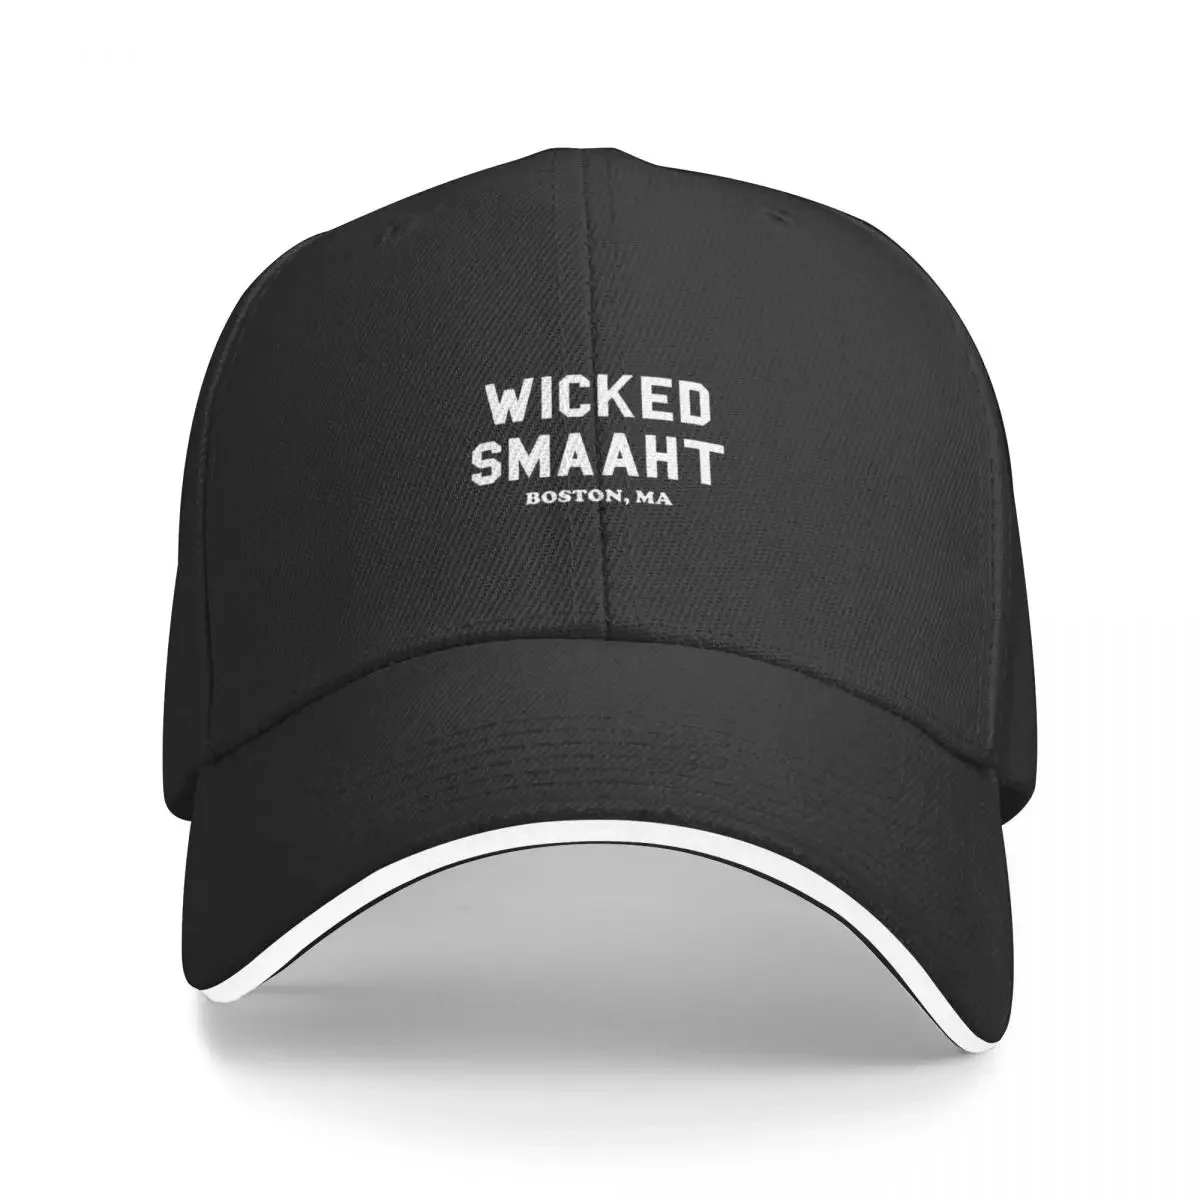 

Wicked Smaaht, Boston, Ma, Boston Baseball Cap cute Hip Hop hard hat Hats For Men Women's